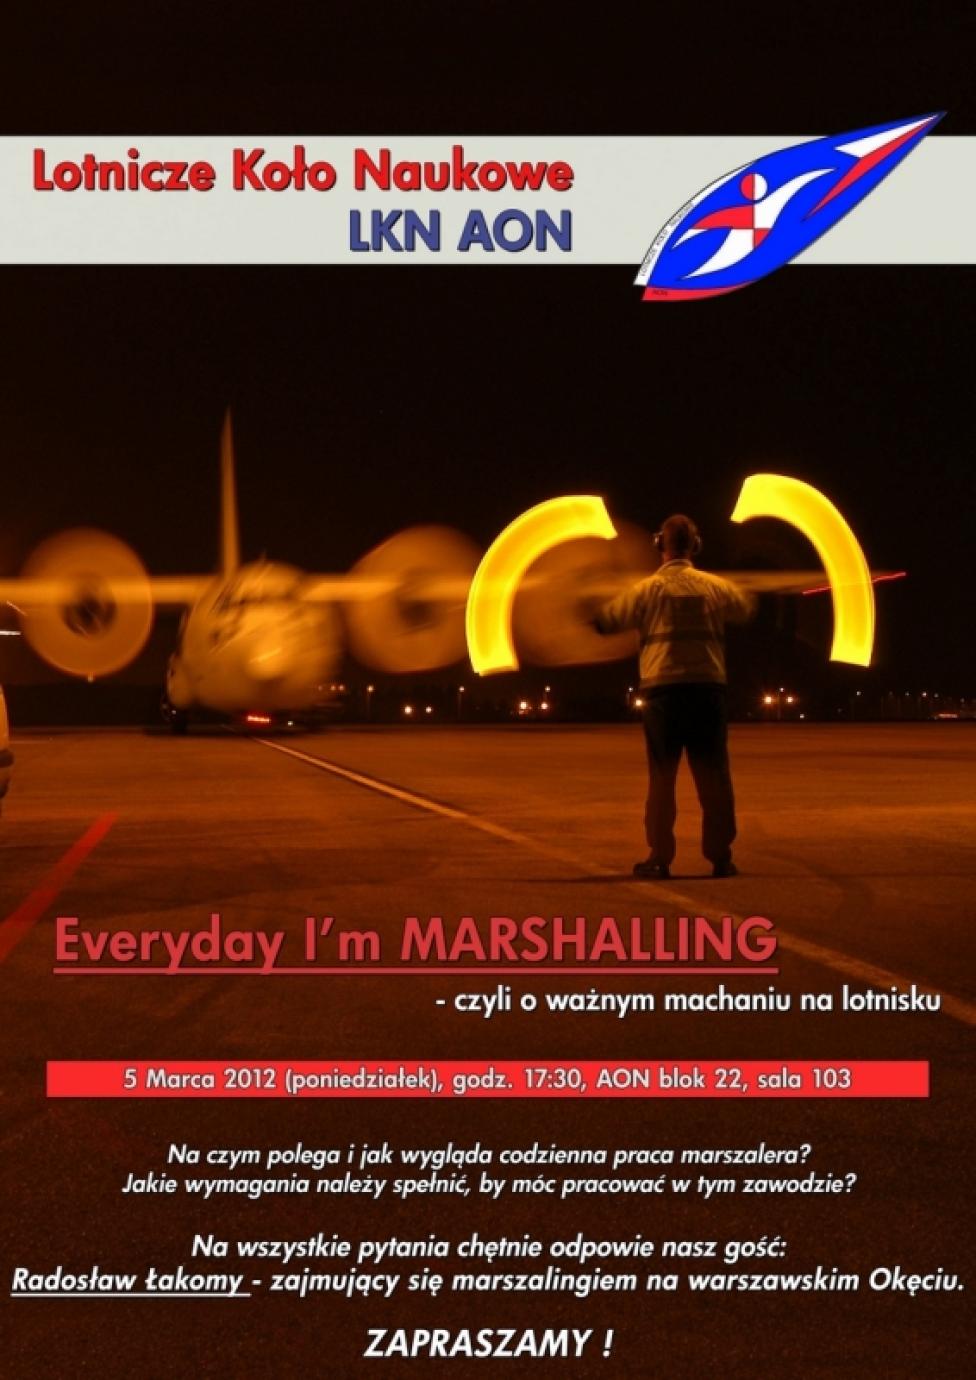 GADULEC: "Everyday I'm marshalling"